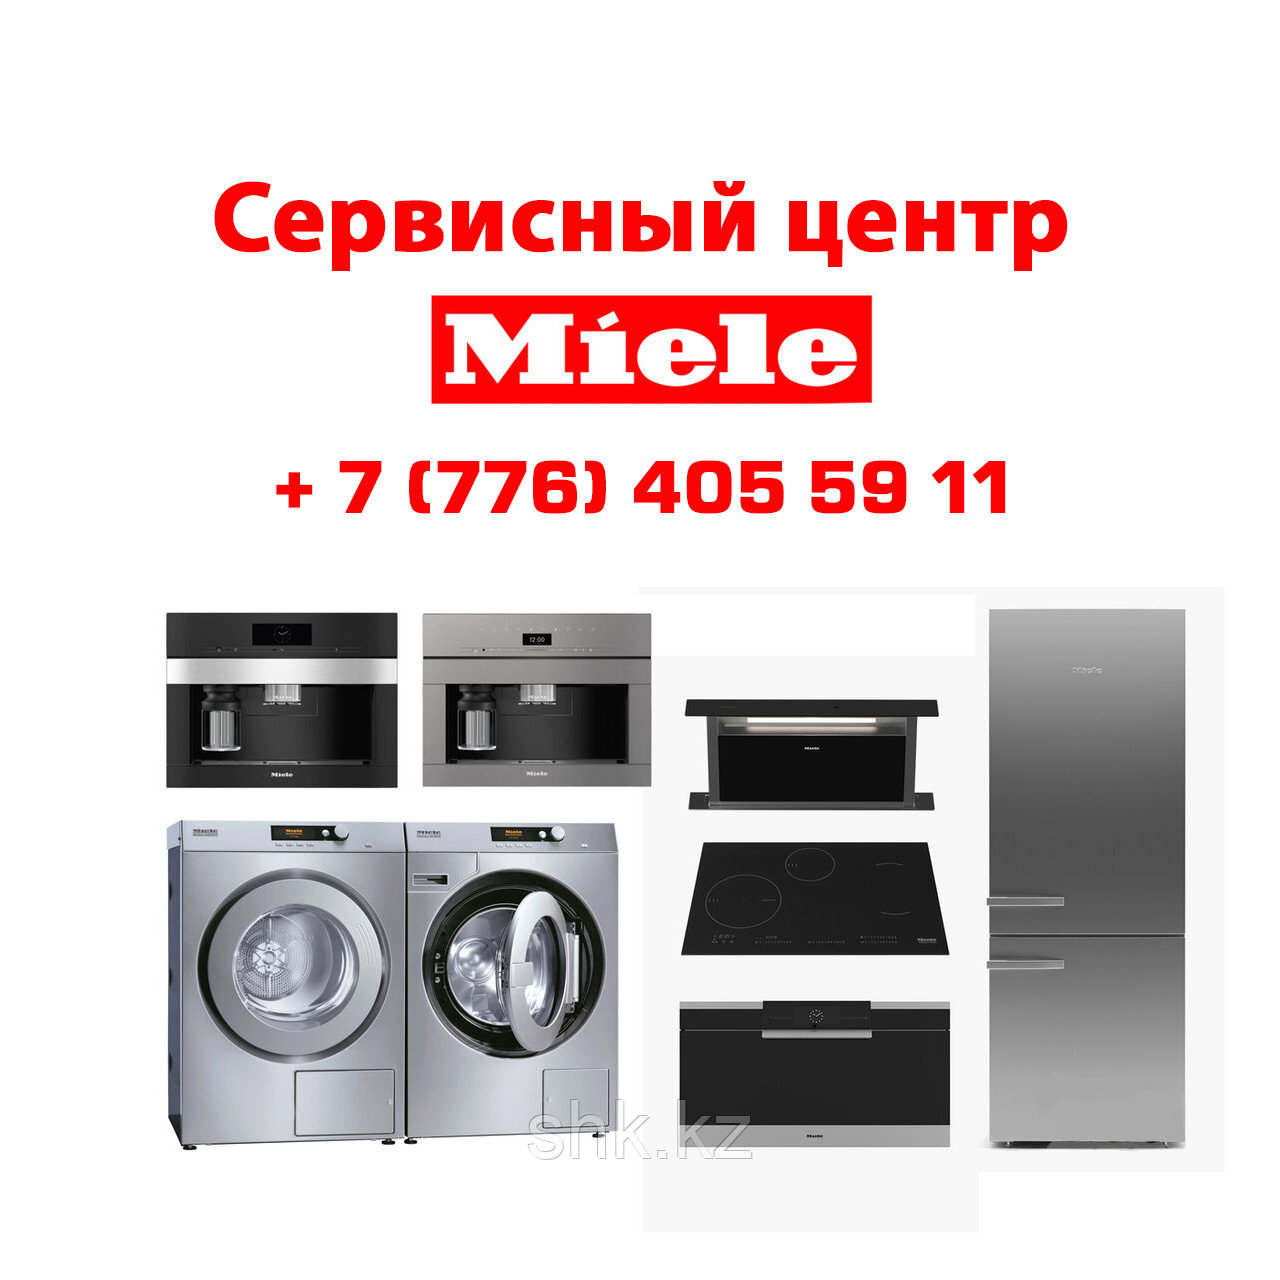 Замена ТЭНа (нагревательный элемент) стиральной машины Miele/Миеле